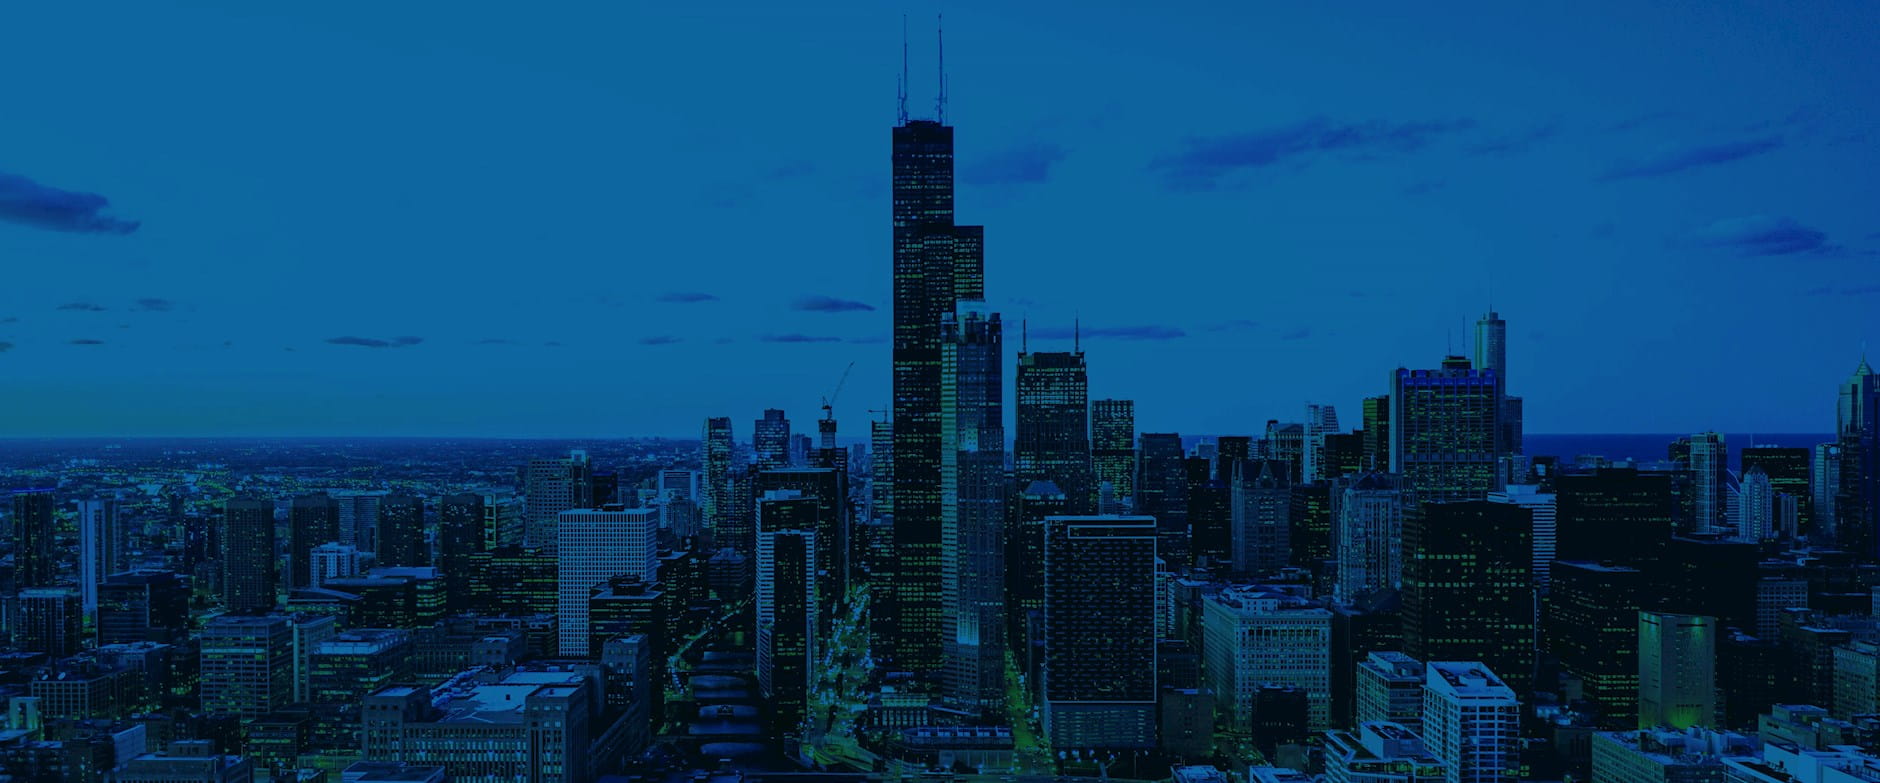 Chicago skyline in blue